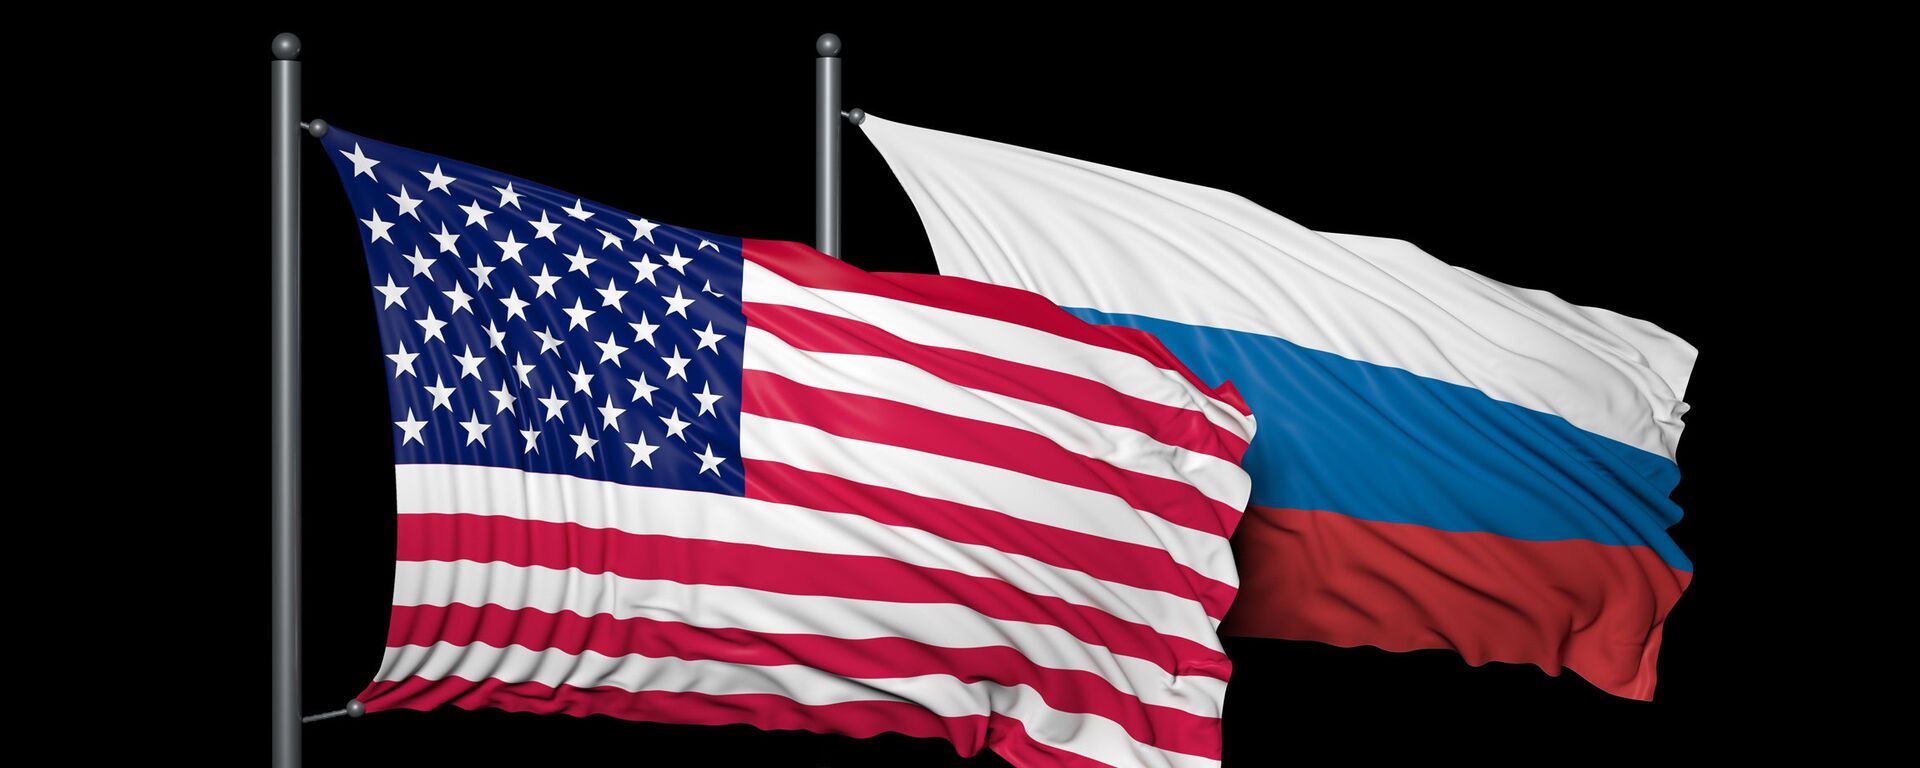 Banderas de EEUU y de Rusia  - Sputnik Mundo, 1920, 17.06.2021